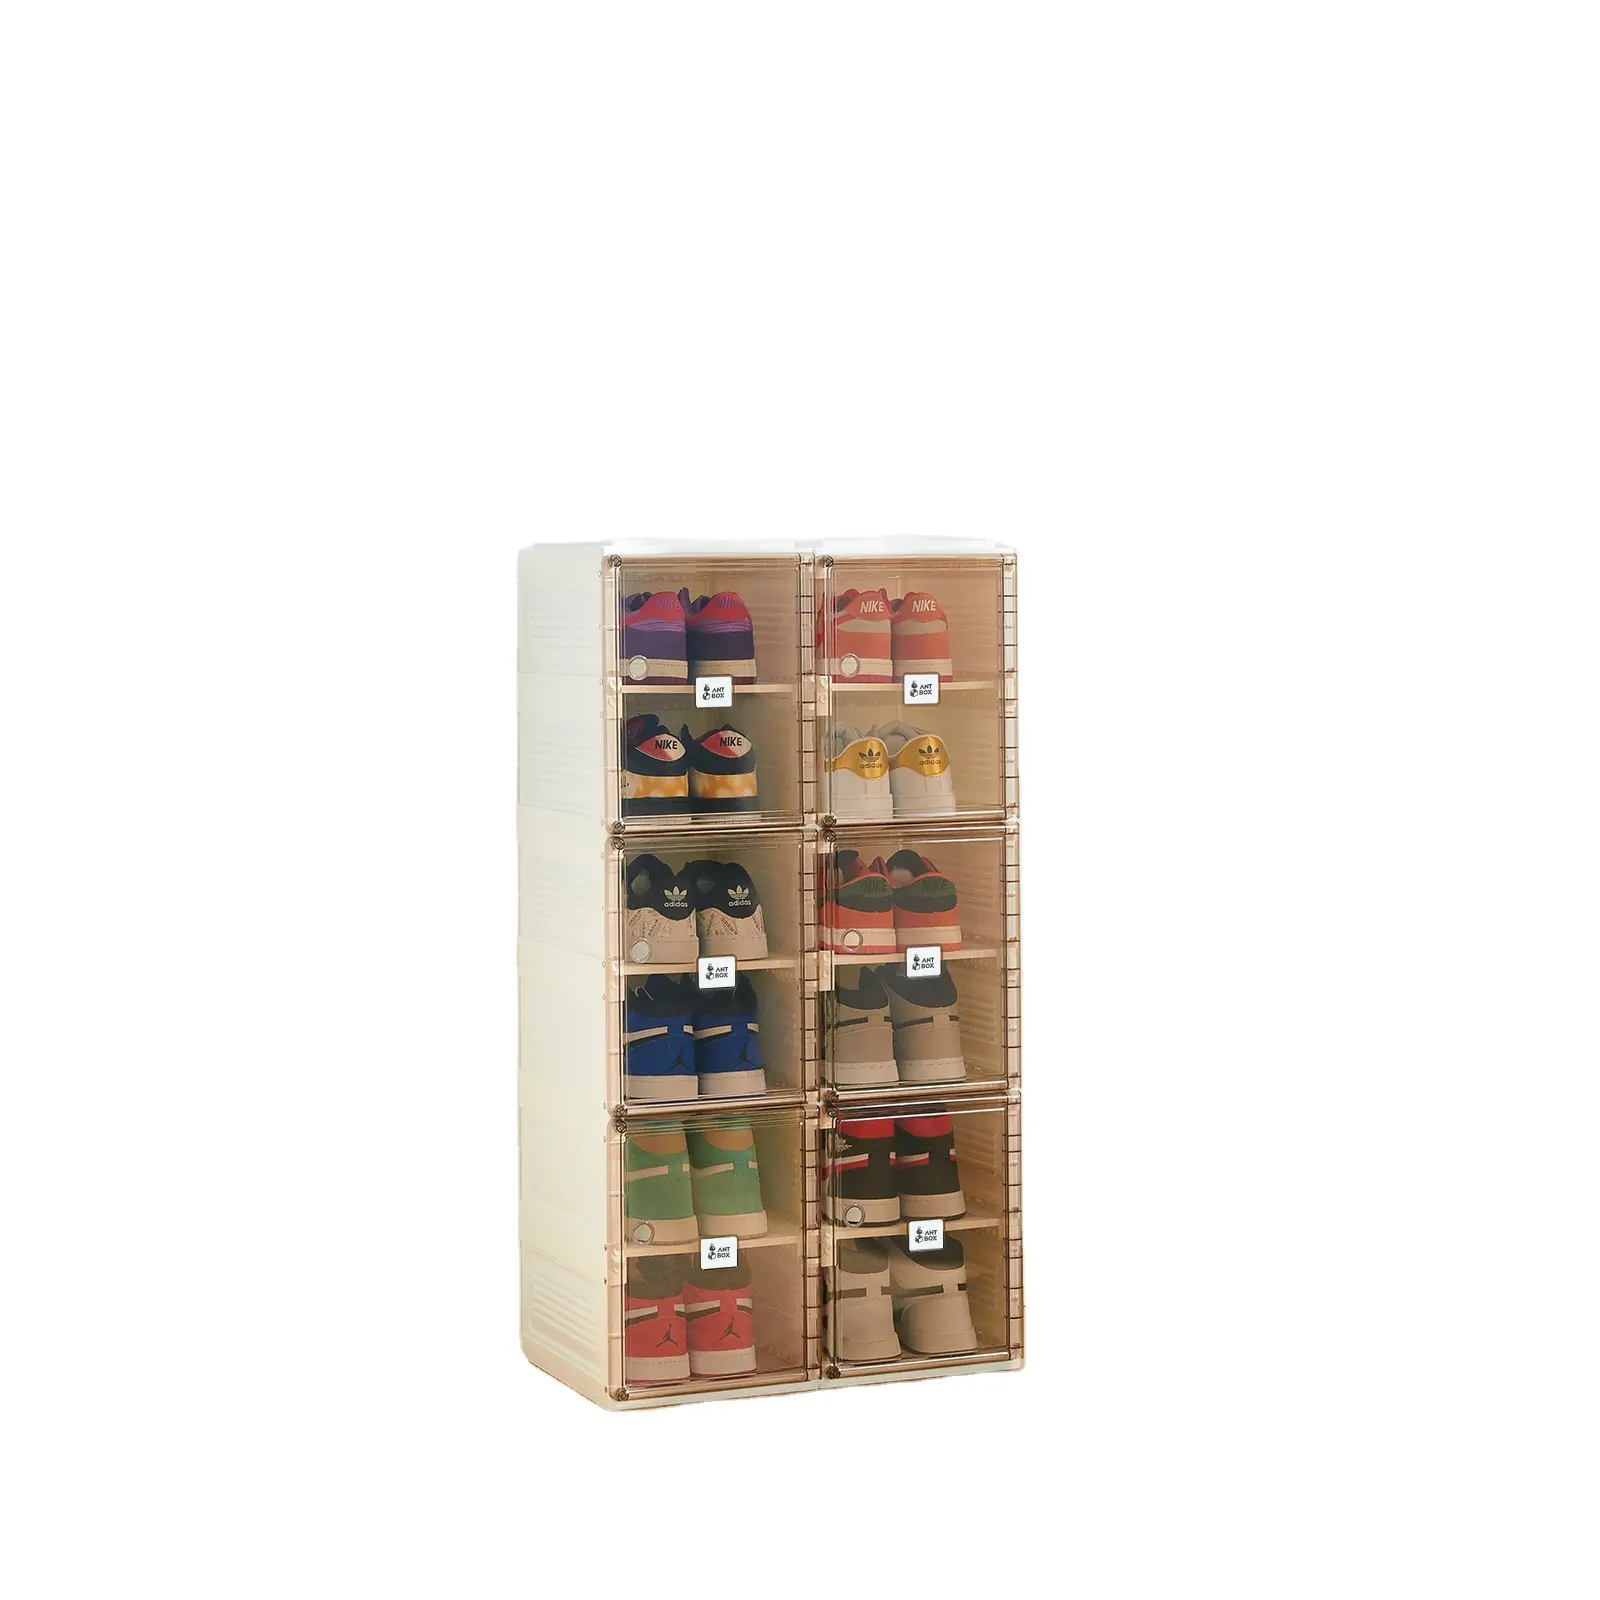 ANTBOX marka çin MAYI kutusu olarak yapılan şeffaf ayakkabı kutusu depolama ev kullanımı için ayakkabı raf olarak kullanılabilir